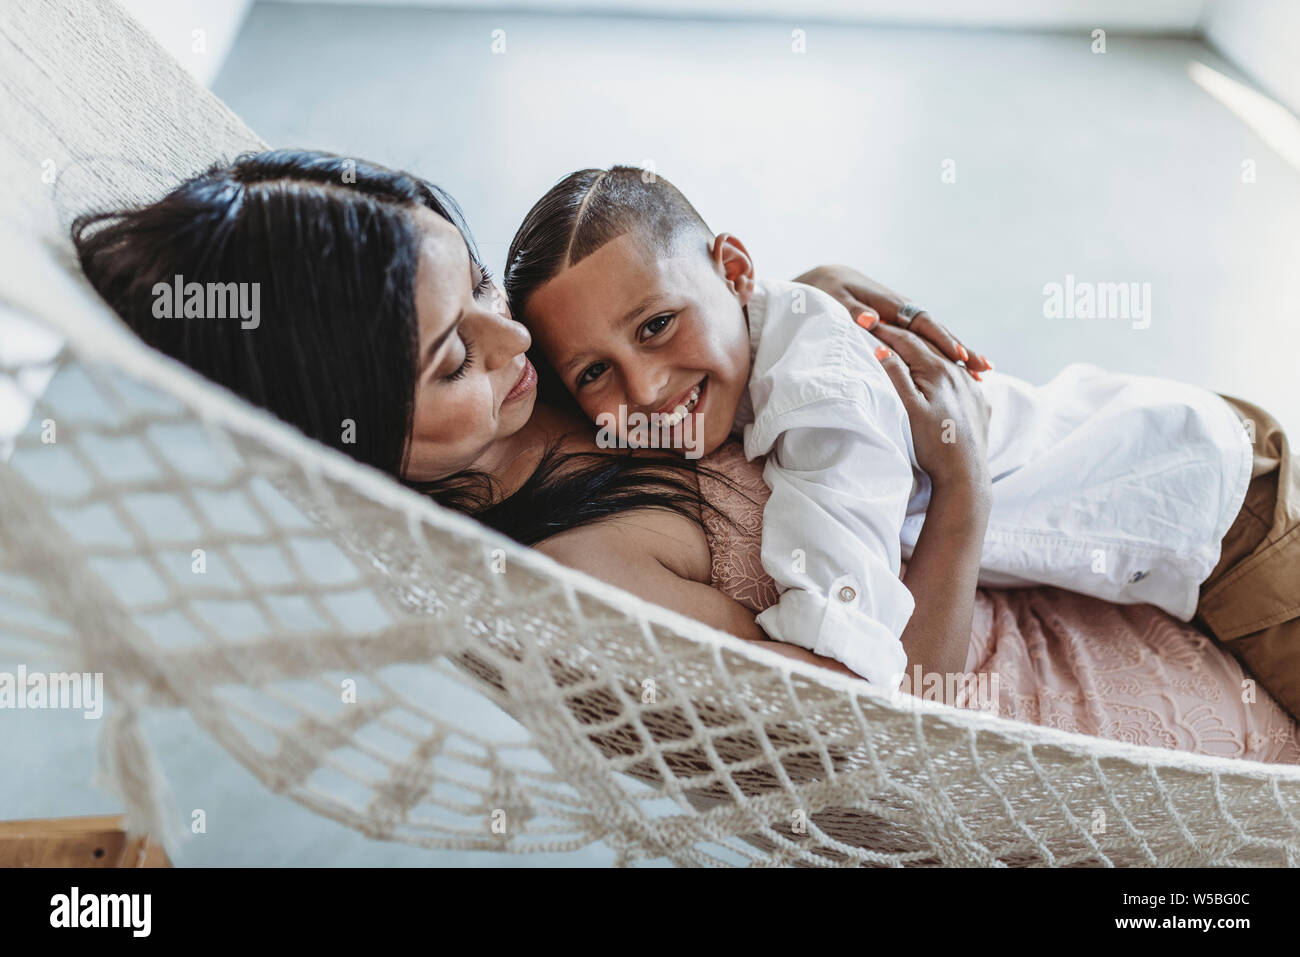 Madre e figlio giovane cuddling mentre posa in amaca in studio Foto Stock